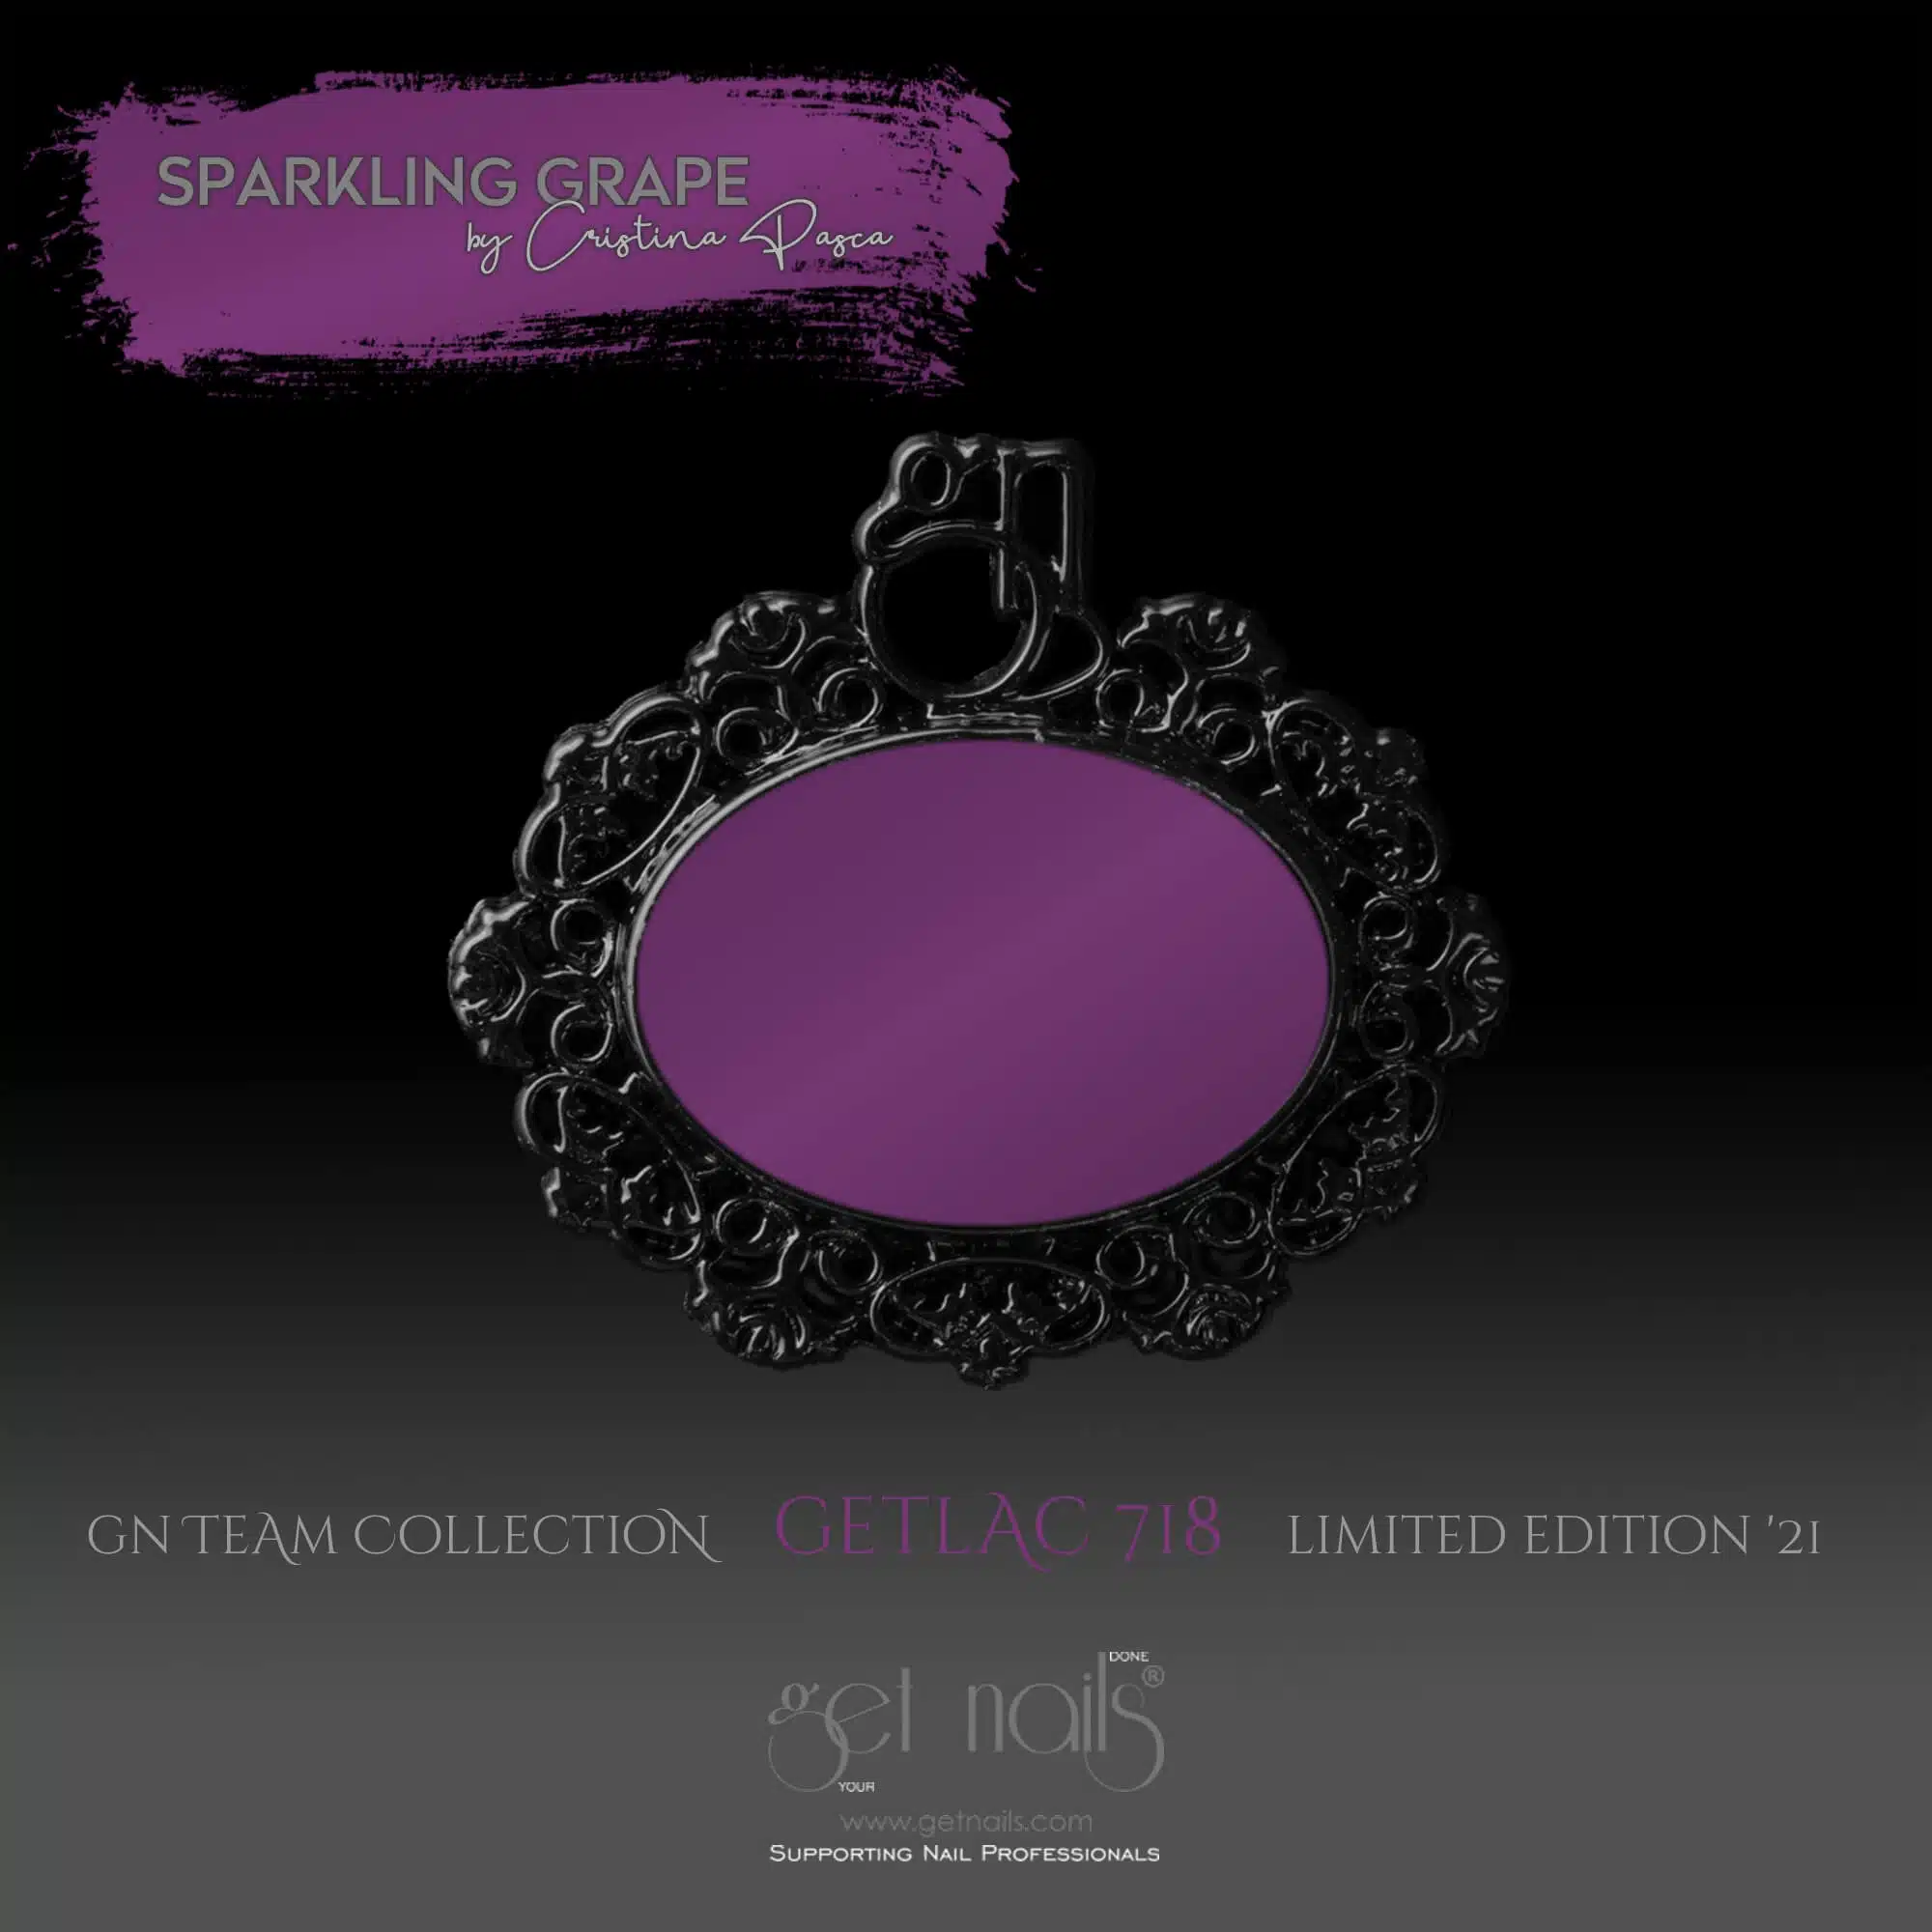 Get Nails Austria - GetLac 718 15g Sparkling Grape